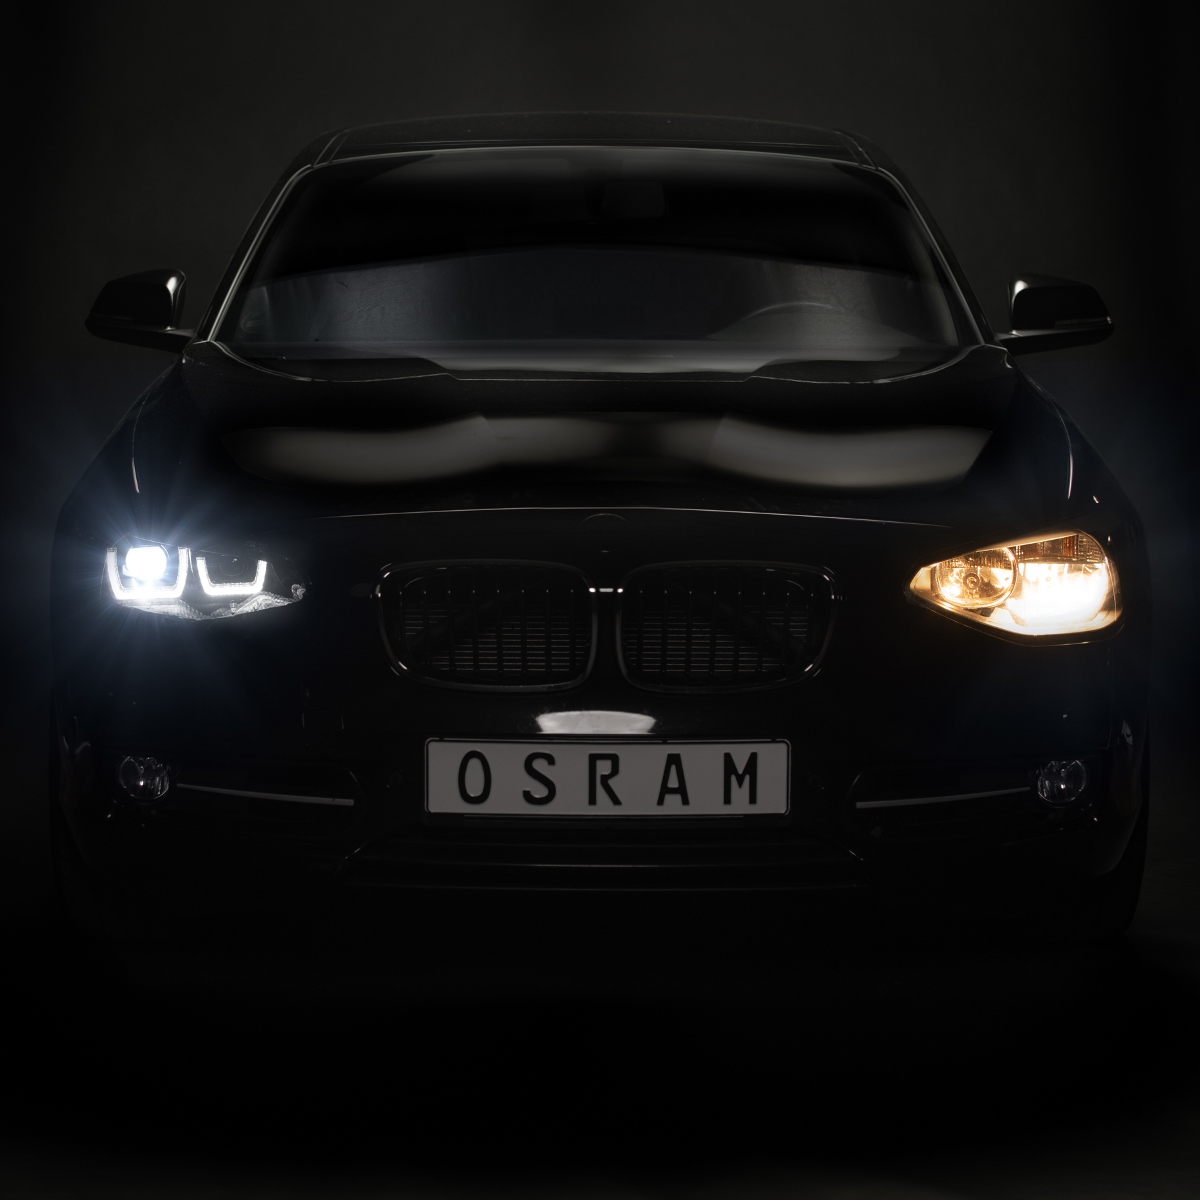 OSRAM LEDriving Voll-LED Scheinwerfer passend für BMW F20 Bj. 11-15 s,  959,90 €